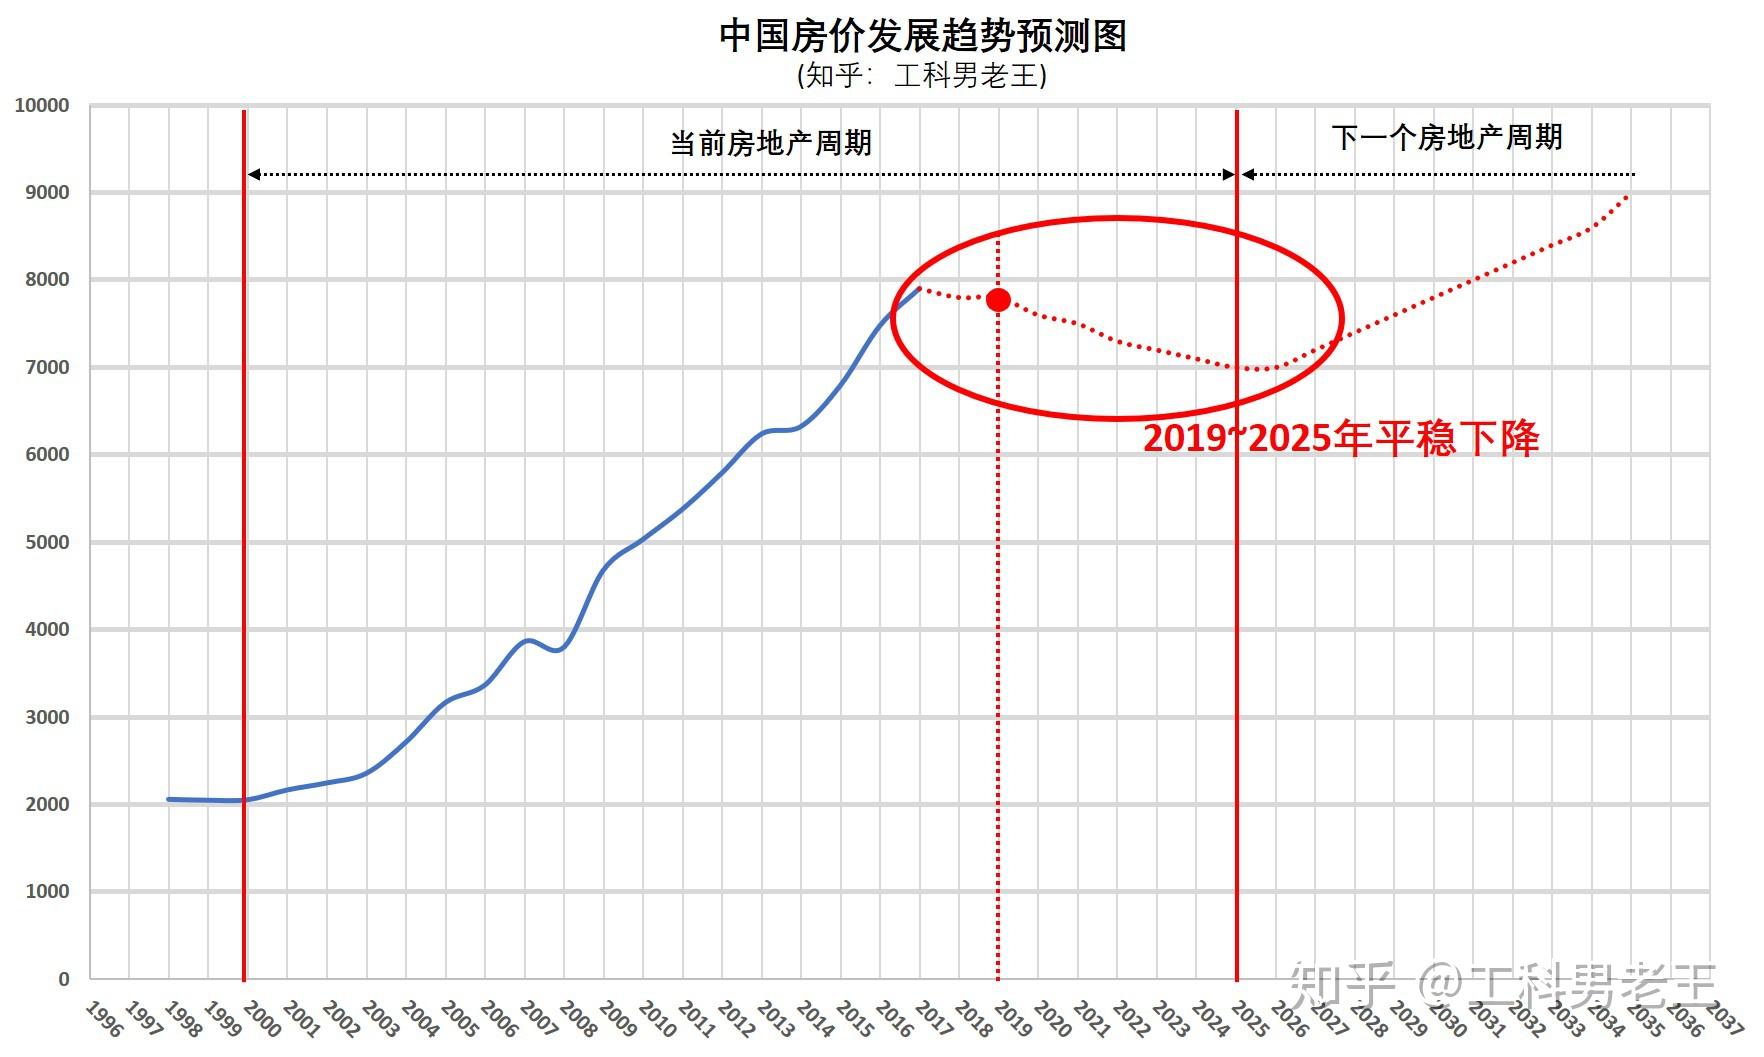 上海的房价预测:我查询了一下上海2017~2019年上海平均房价走势,从